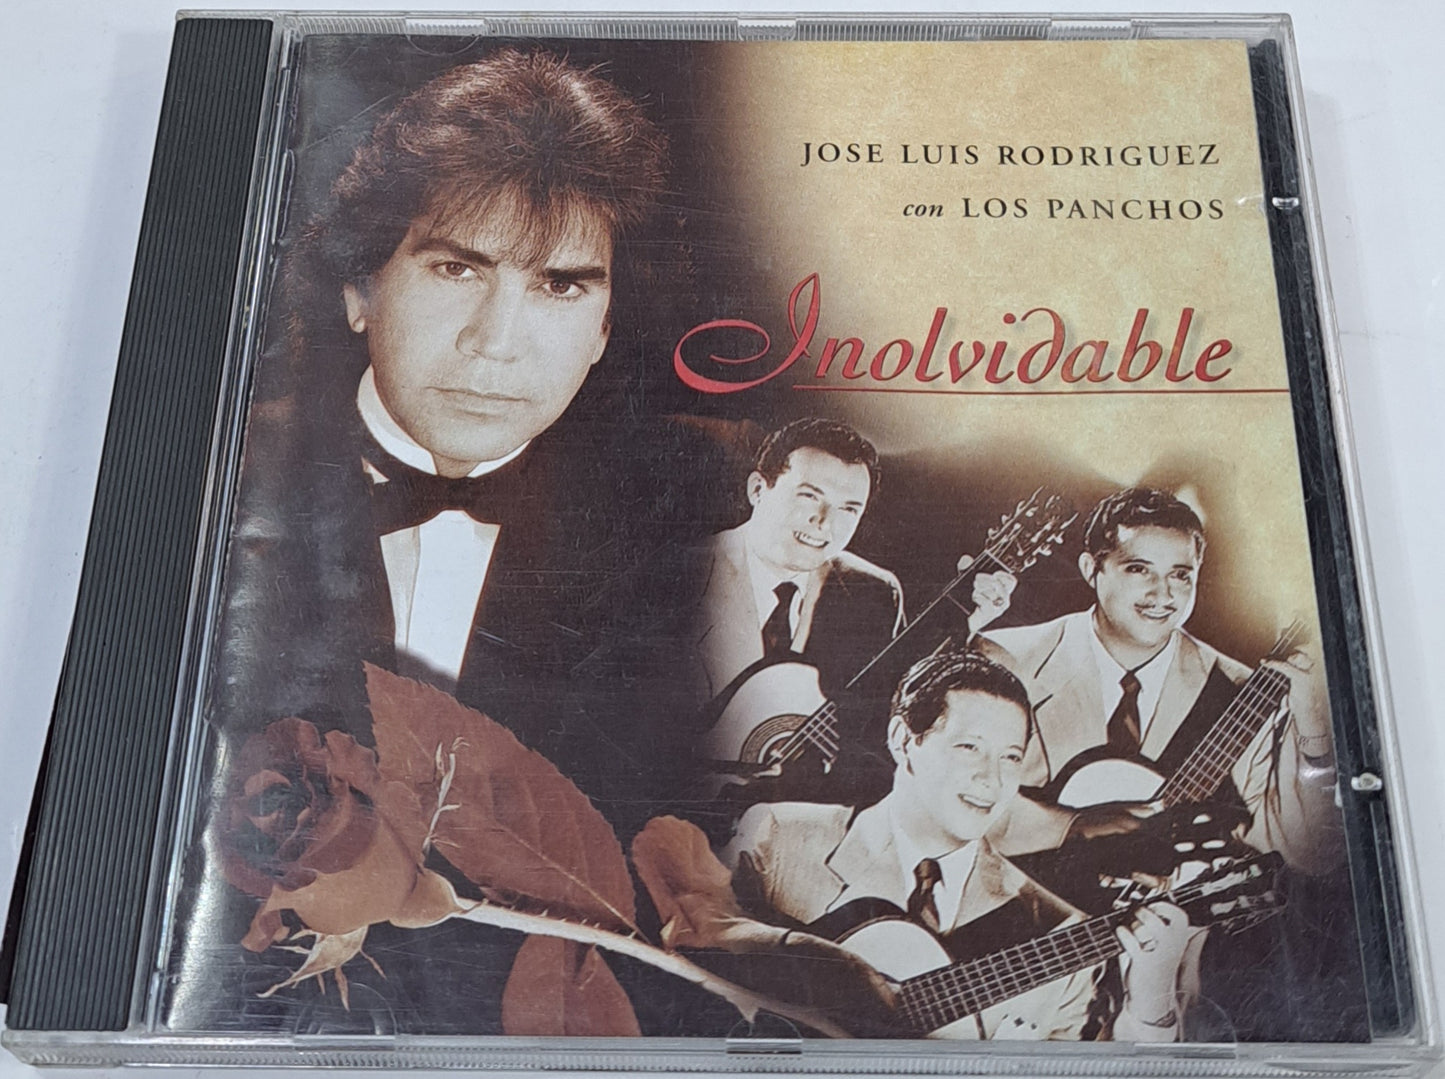 JOSE LUIS RODRIGUEZ CON LOS PANCHOS - INOLVIDABLE BOLEROS CD